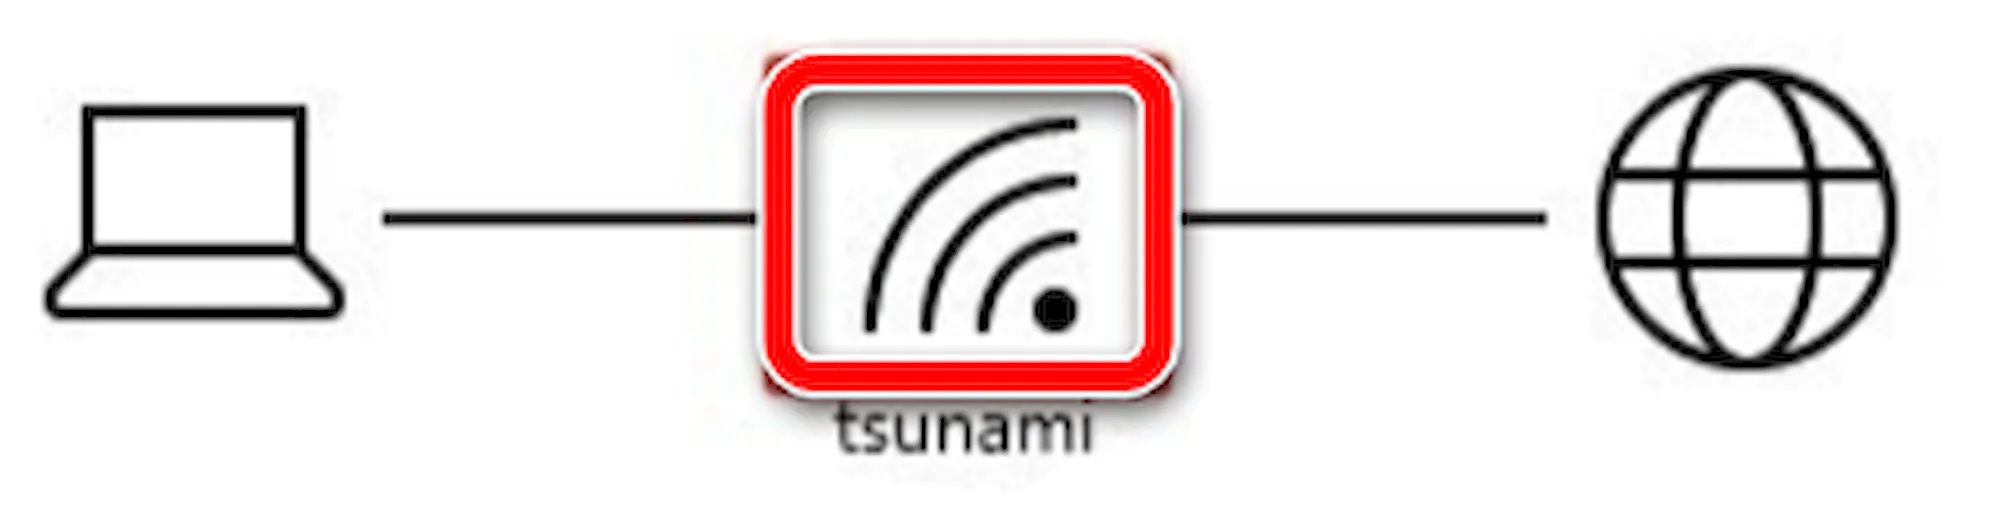 Параметр сигнала сети Wi-Fi